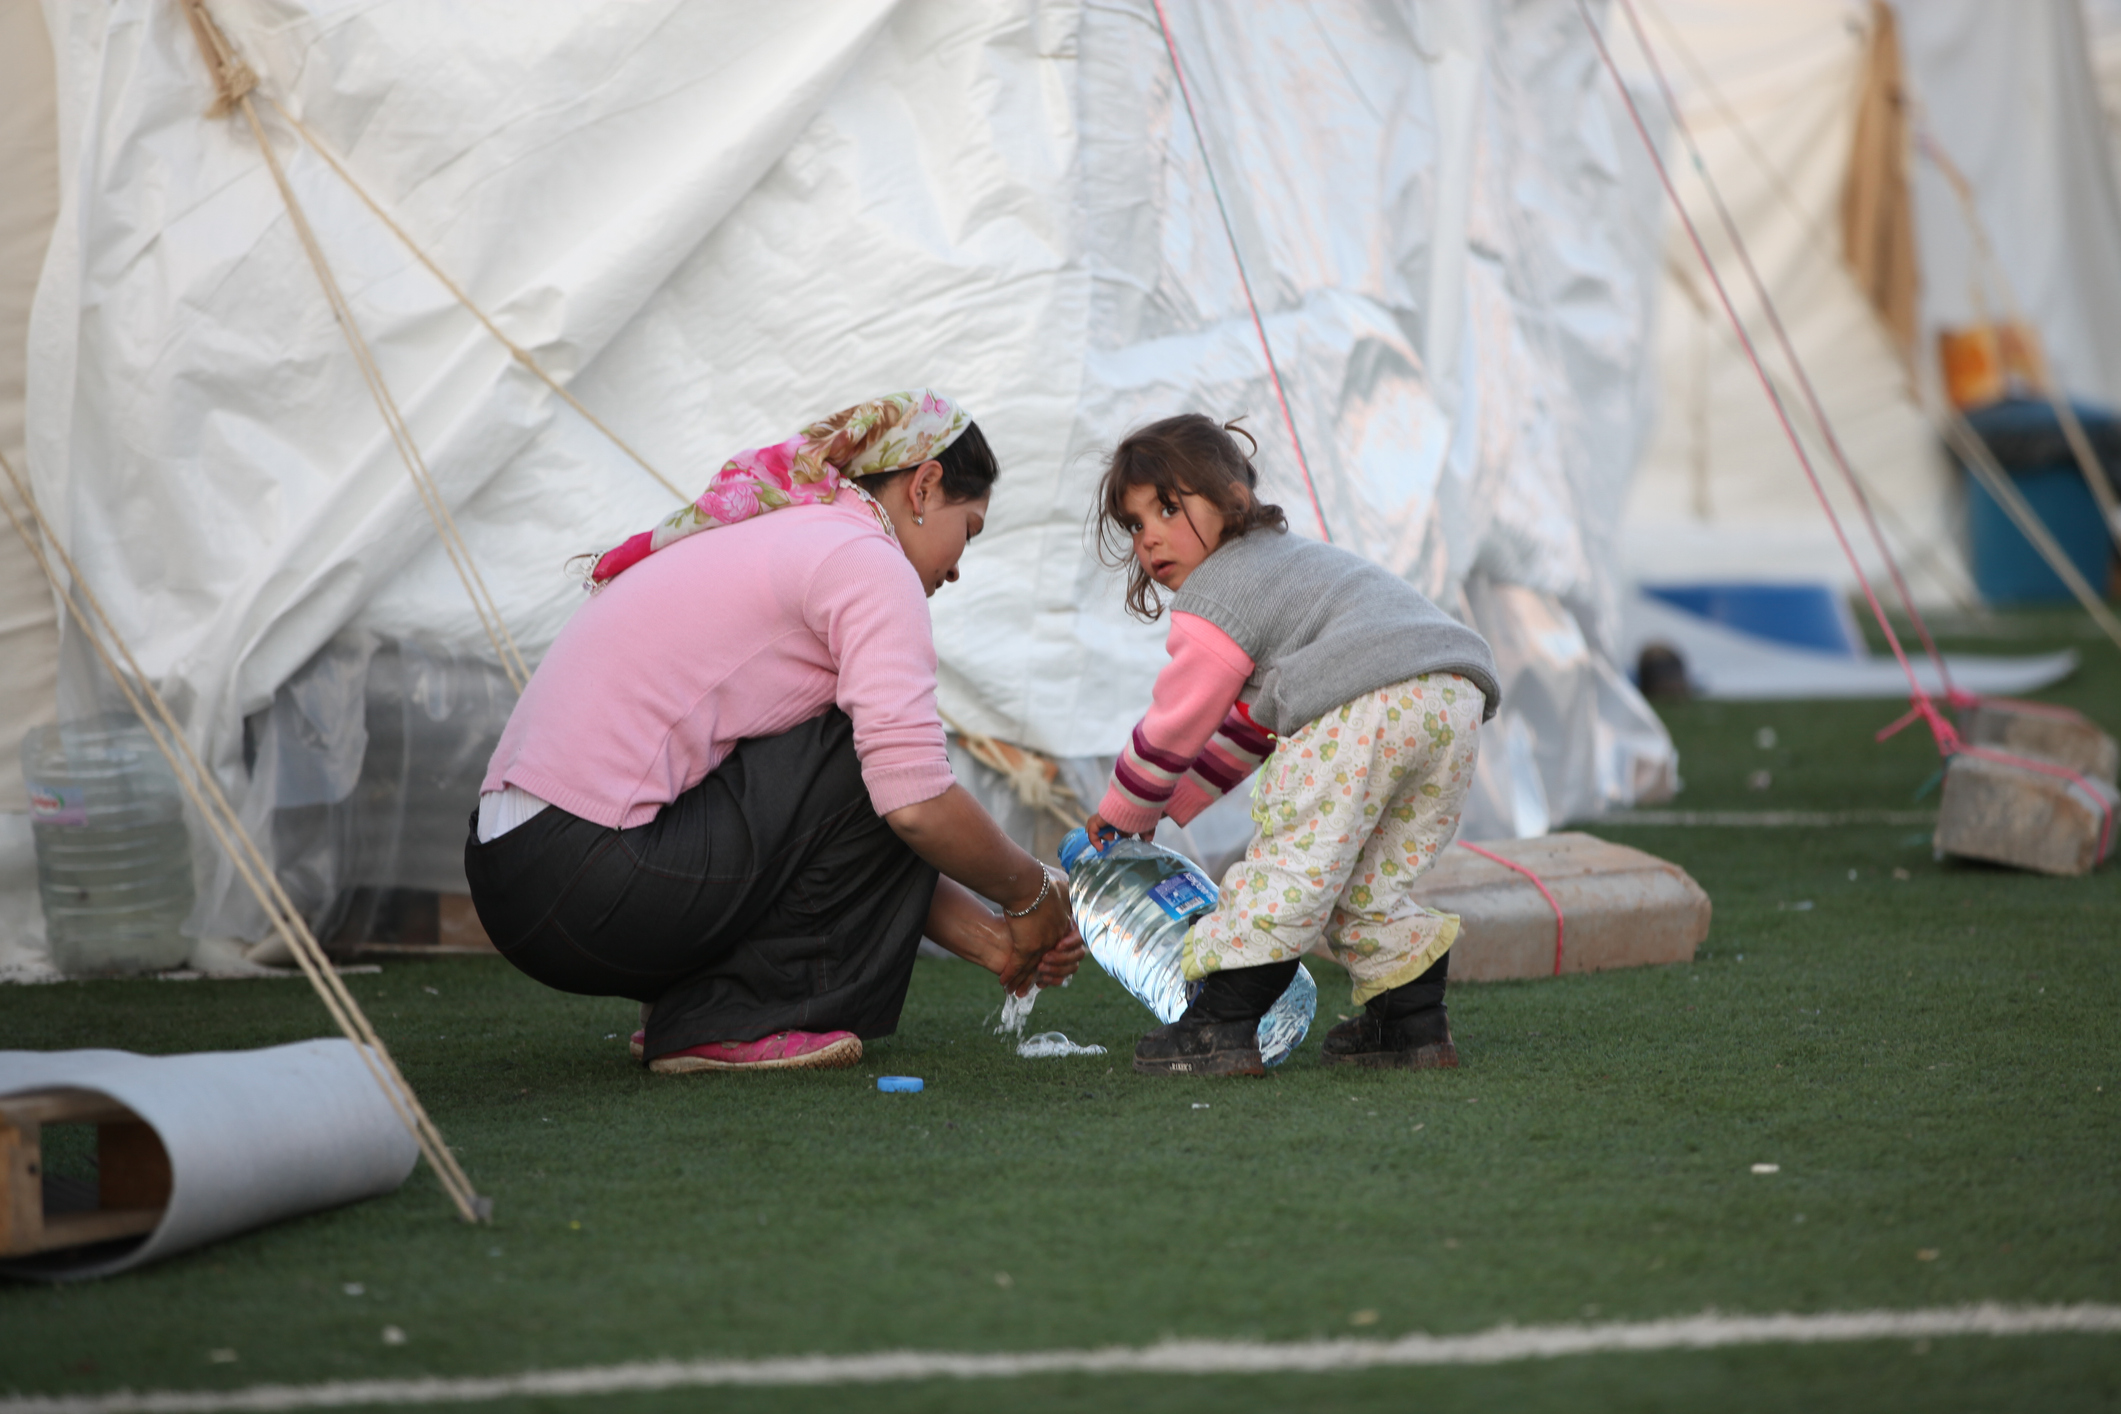 "Μπαμπά, θα πεθάνουμε;" - Ψυχολόγοι και εθελοντές στην Τουρκία στηρίζουν παιδιά και γονείς που γλίτωσαν από τον σεισμό